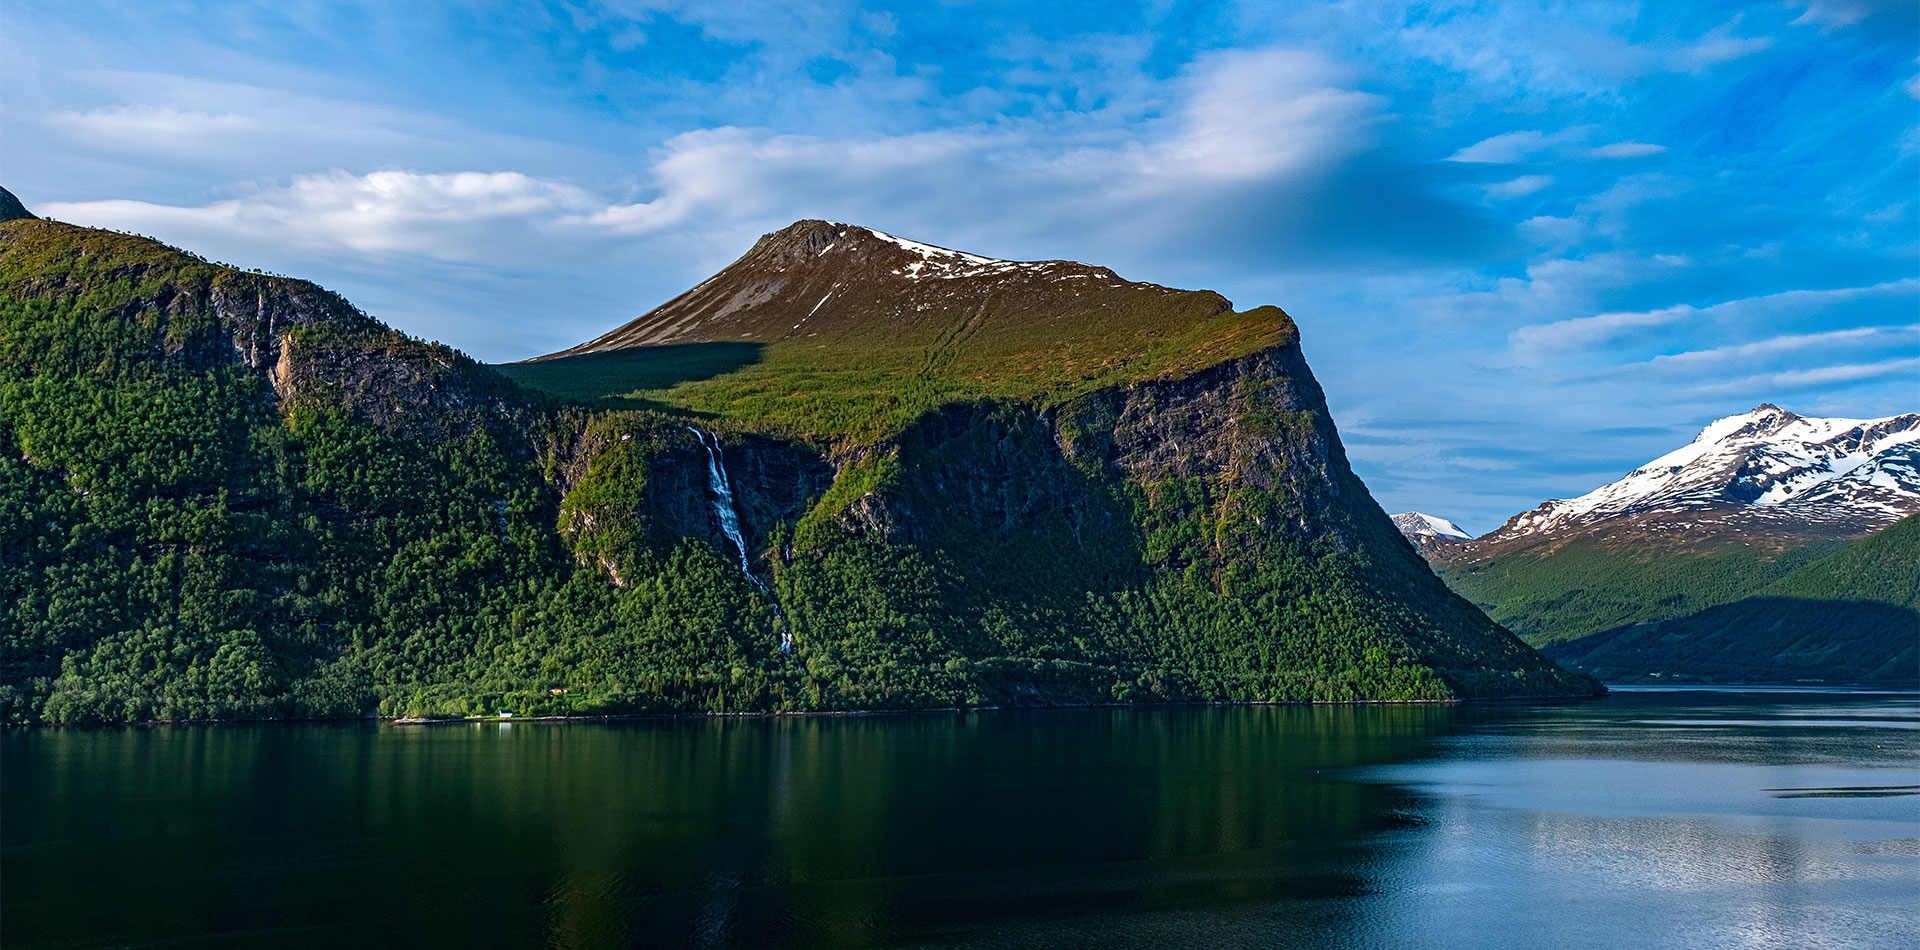 View of Romsdalfjord, Norway